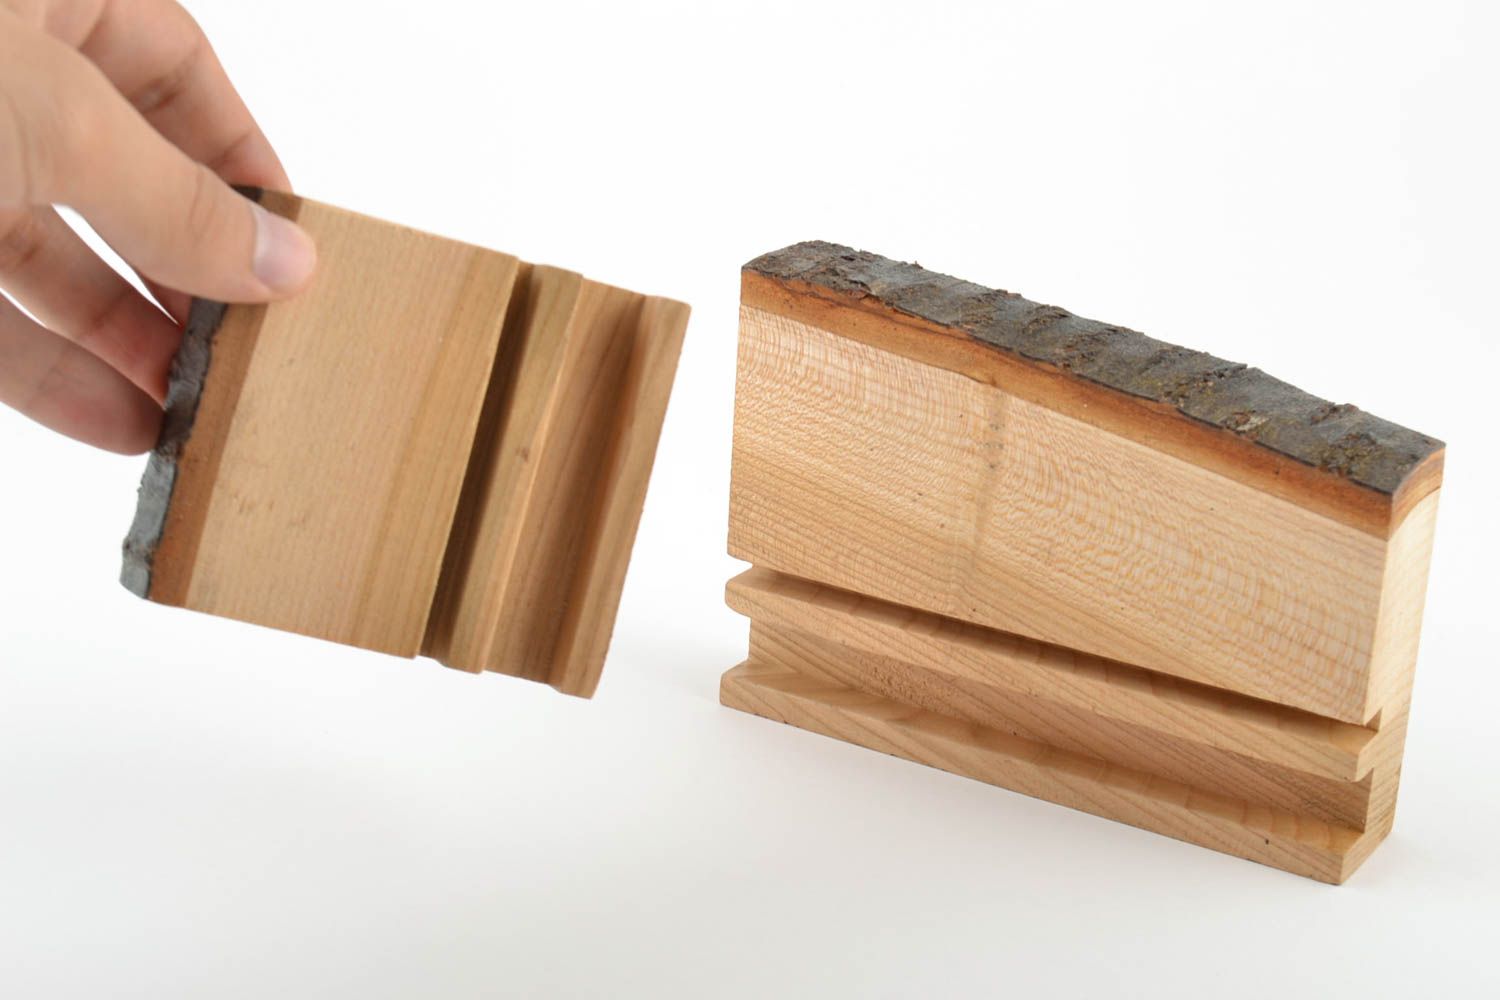 Soportes de madera para Tablet o móvil hechos a mano 2 artículos ecológicos  foto 5